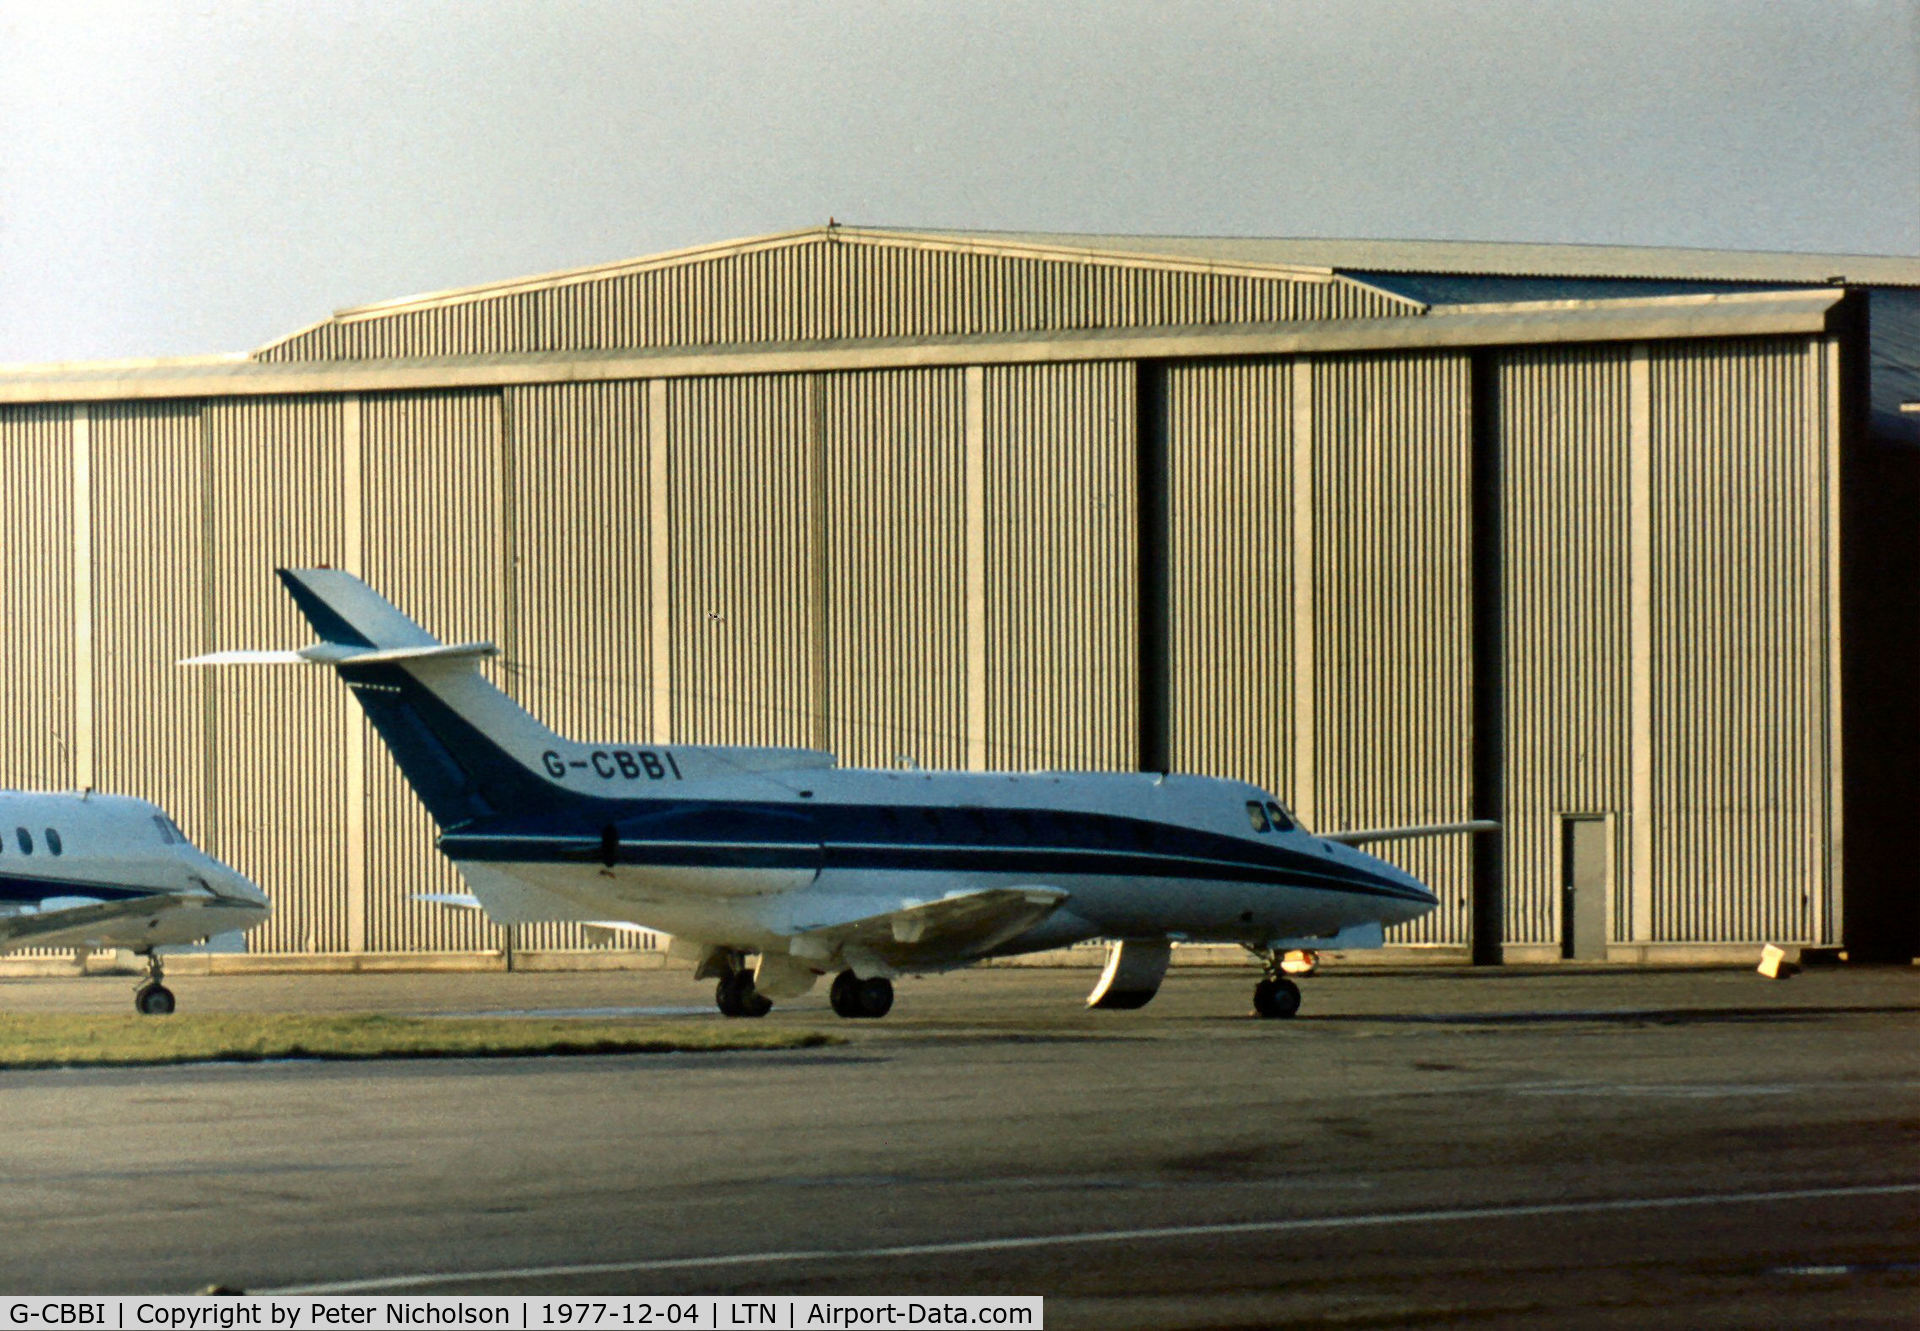 G-CBBI, 1977 British Aerospace HS.125-700A C/N 257013, HS.125 Series 700B as seen at Luton in December 1977.